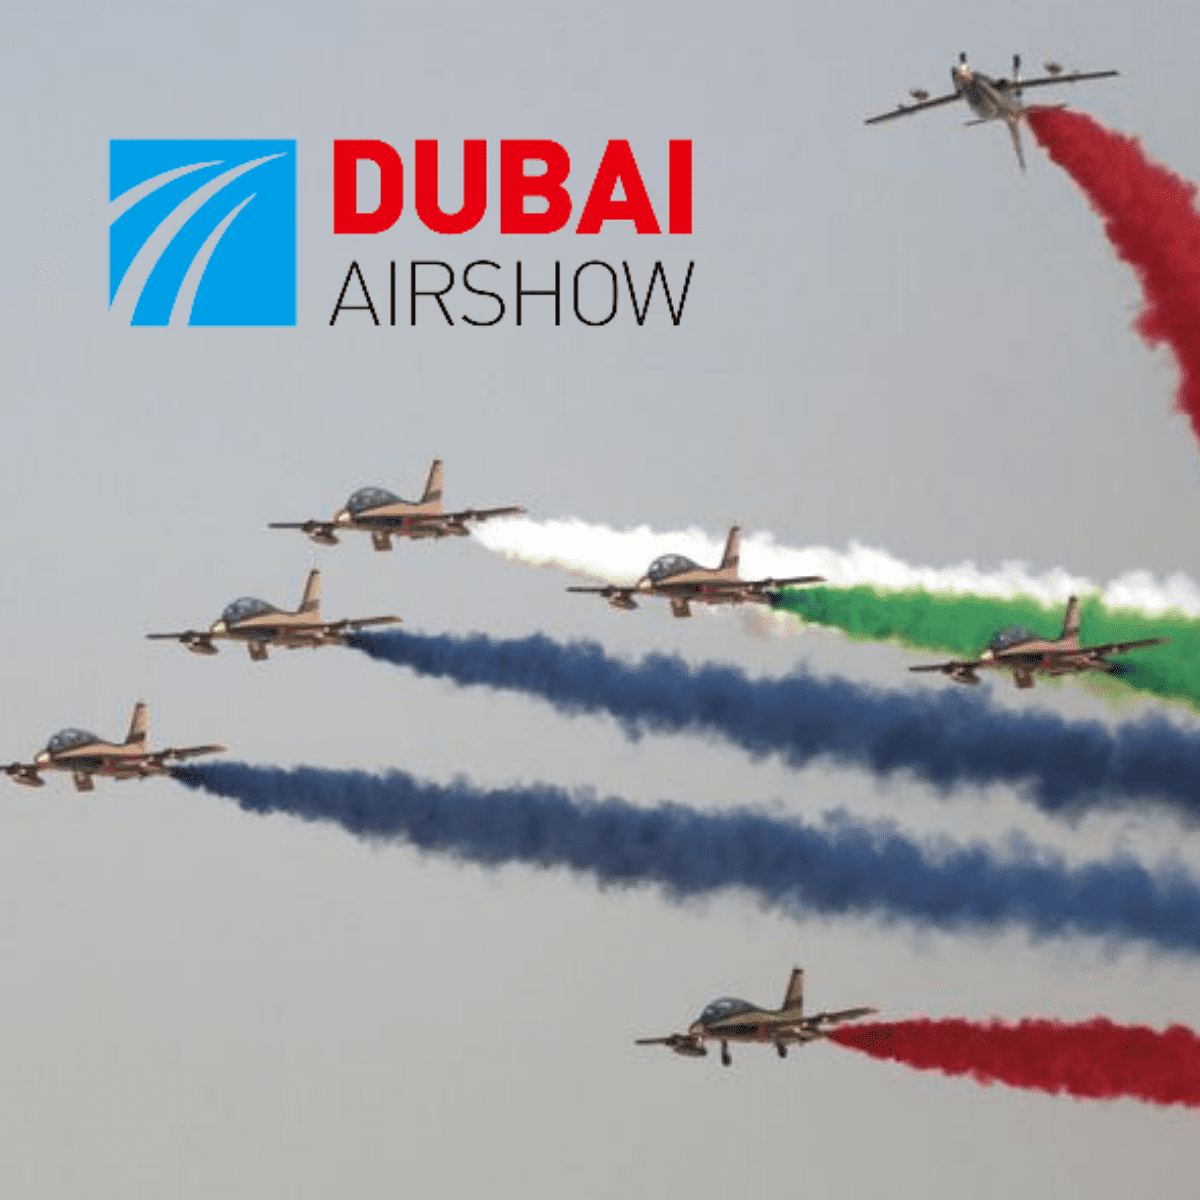 Aircraft Aeronautic Fast Paint Repair Dubai Airshow DGA MRO maintenance, Corso Magenta&#8217;s participation in the Dubai Airshow